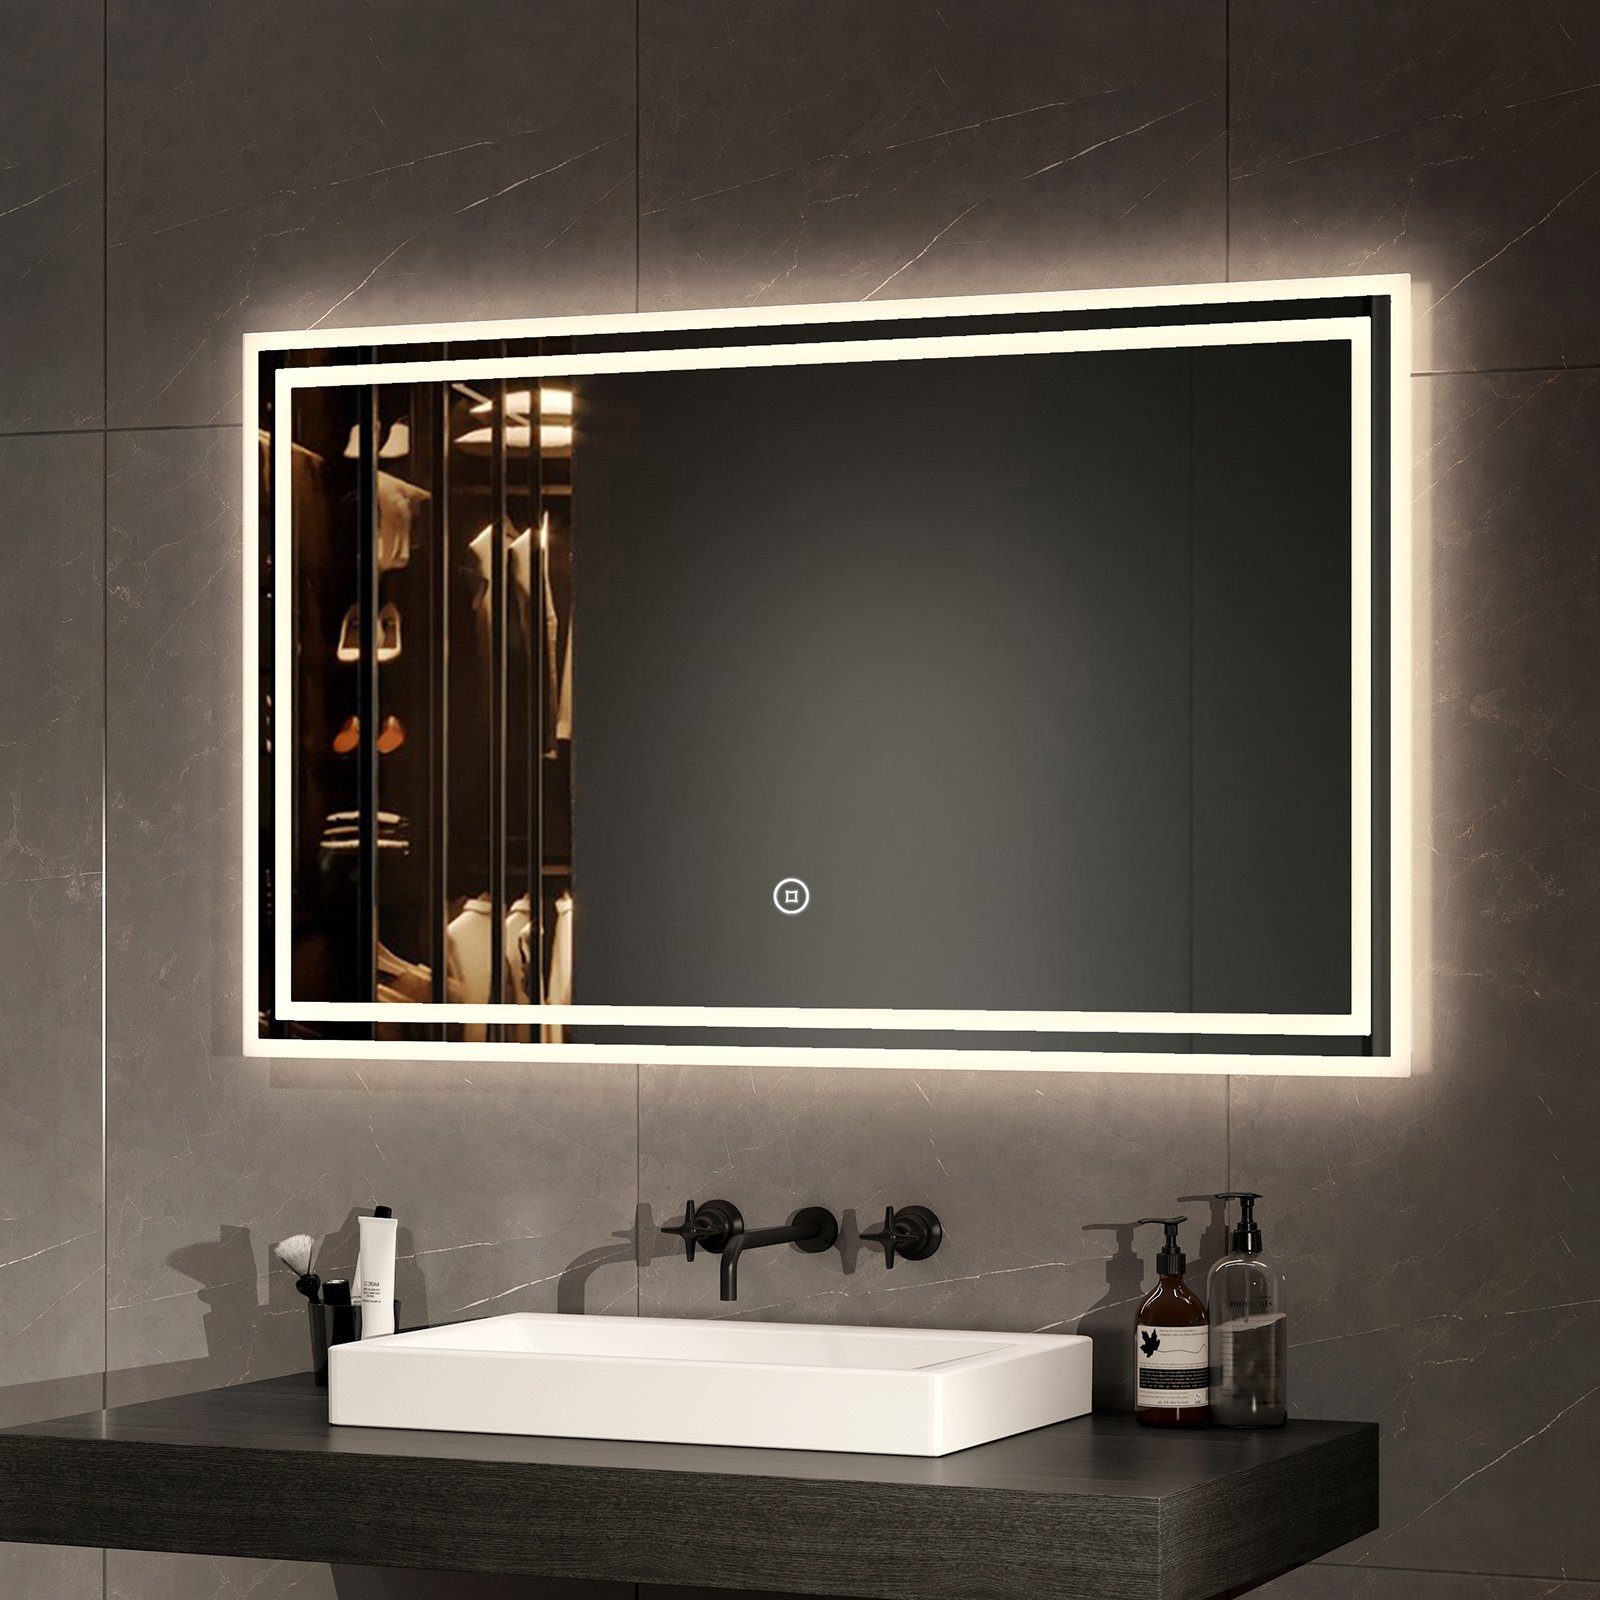 Beleuchtung Energiesparend Install mit Badspiegel Badezimmerspiegel Einfach Lichtfarben Wandspiegel Explosionsschutz EMKE Badezimmerspiegel, 3 LED